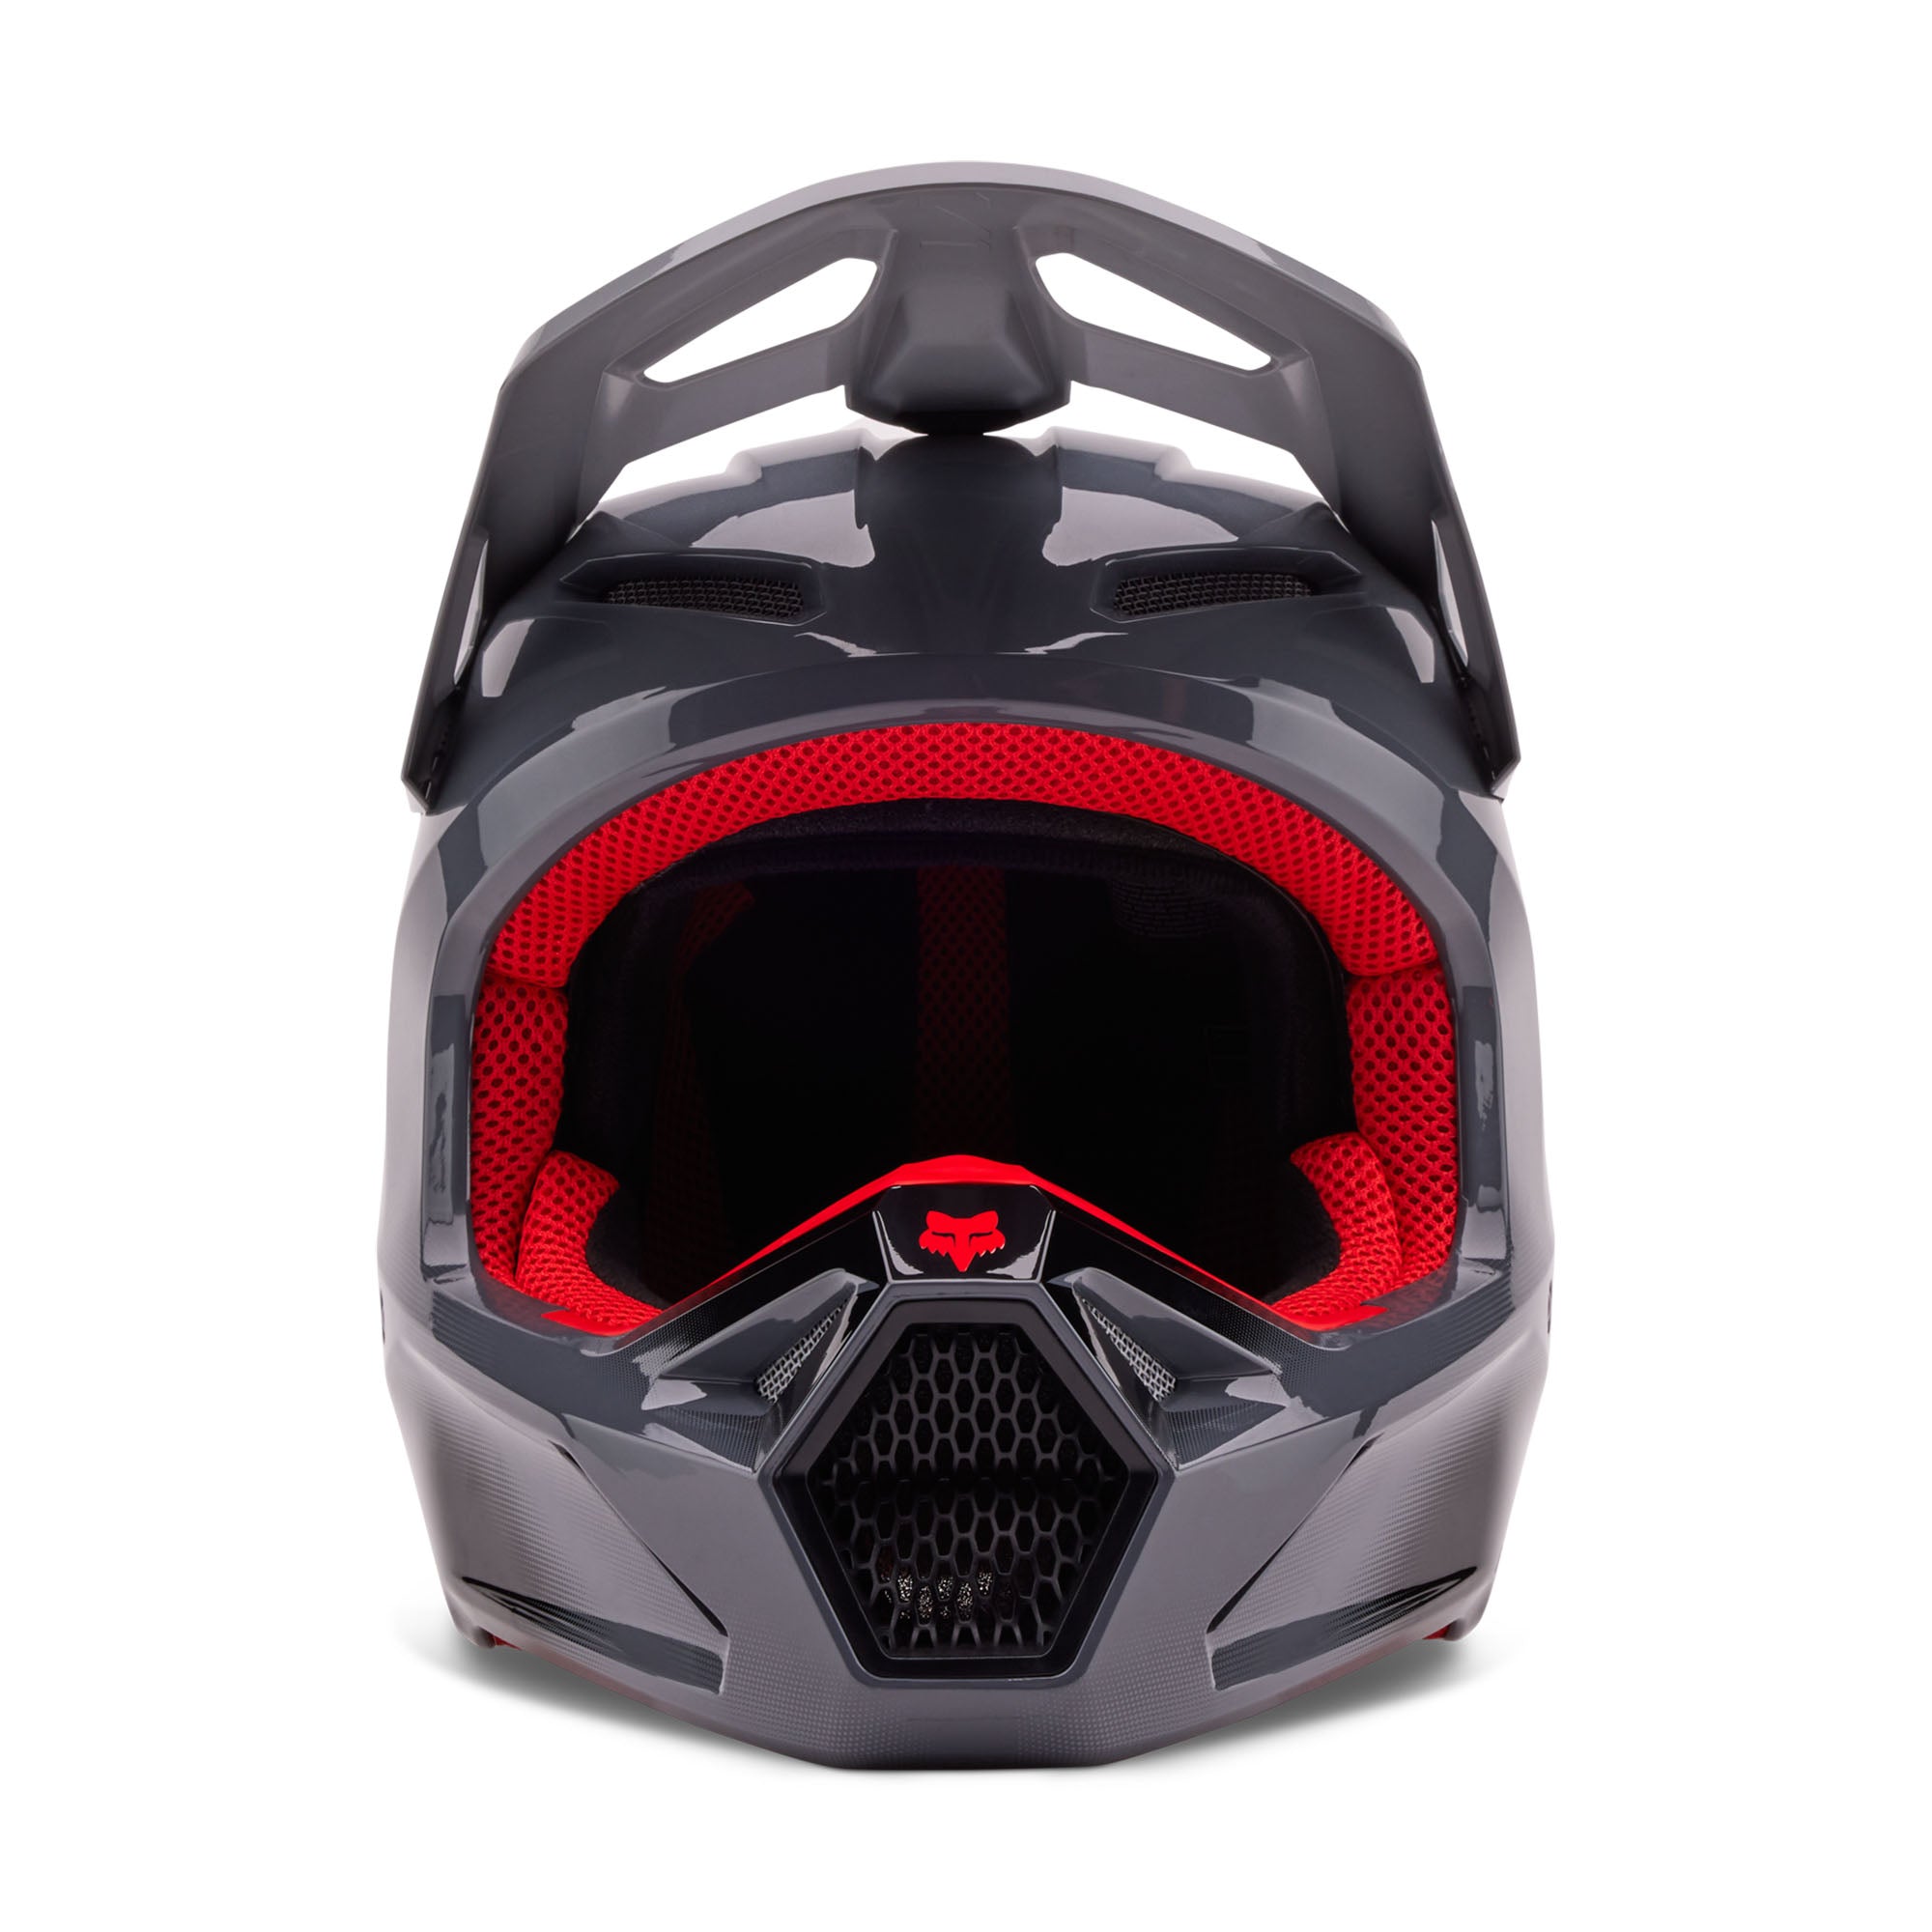 Fox Racing V1 Interfere Helmet